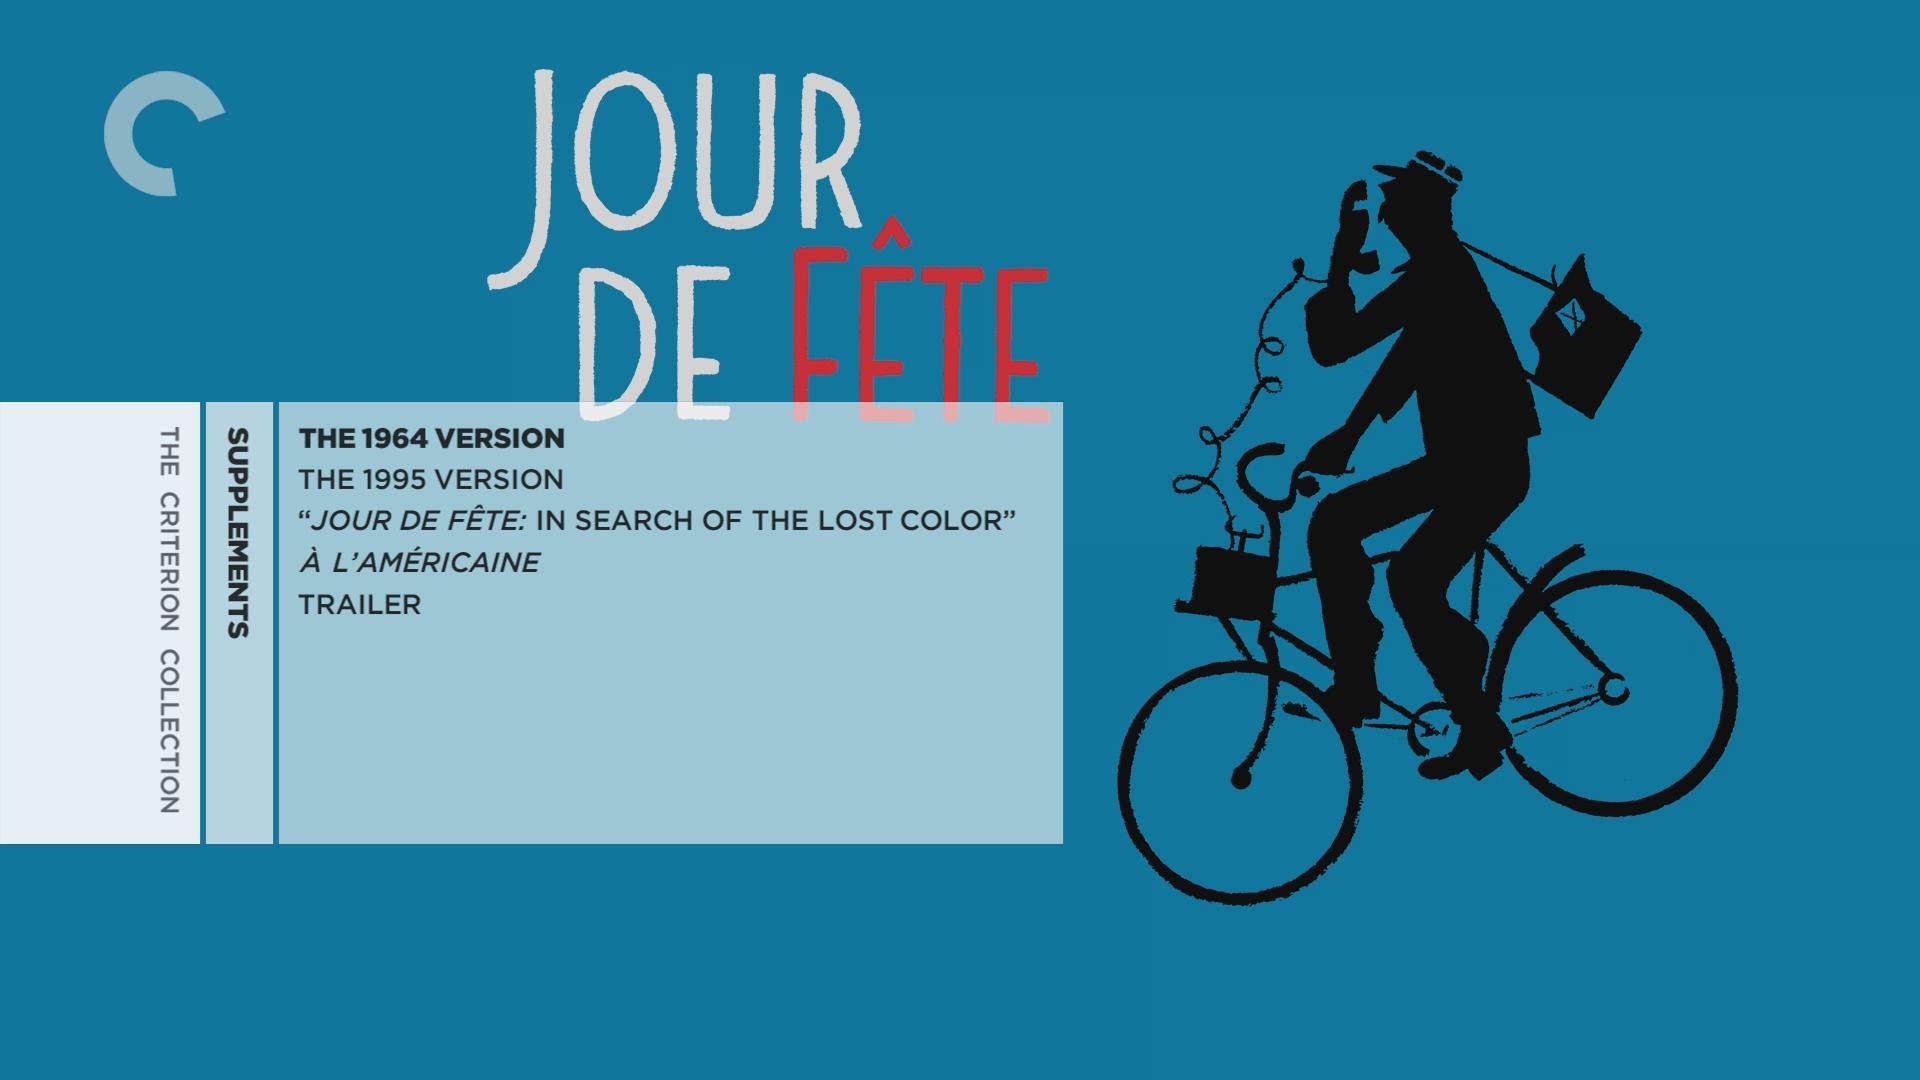 The Complete Jacques Tati - BR 1. Jour de fête (1949) [ReUp]